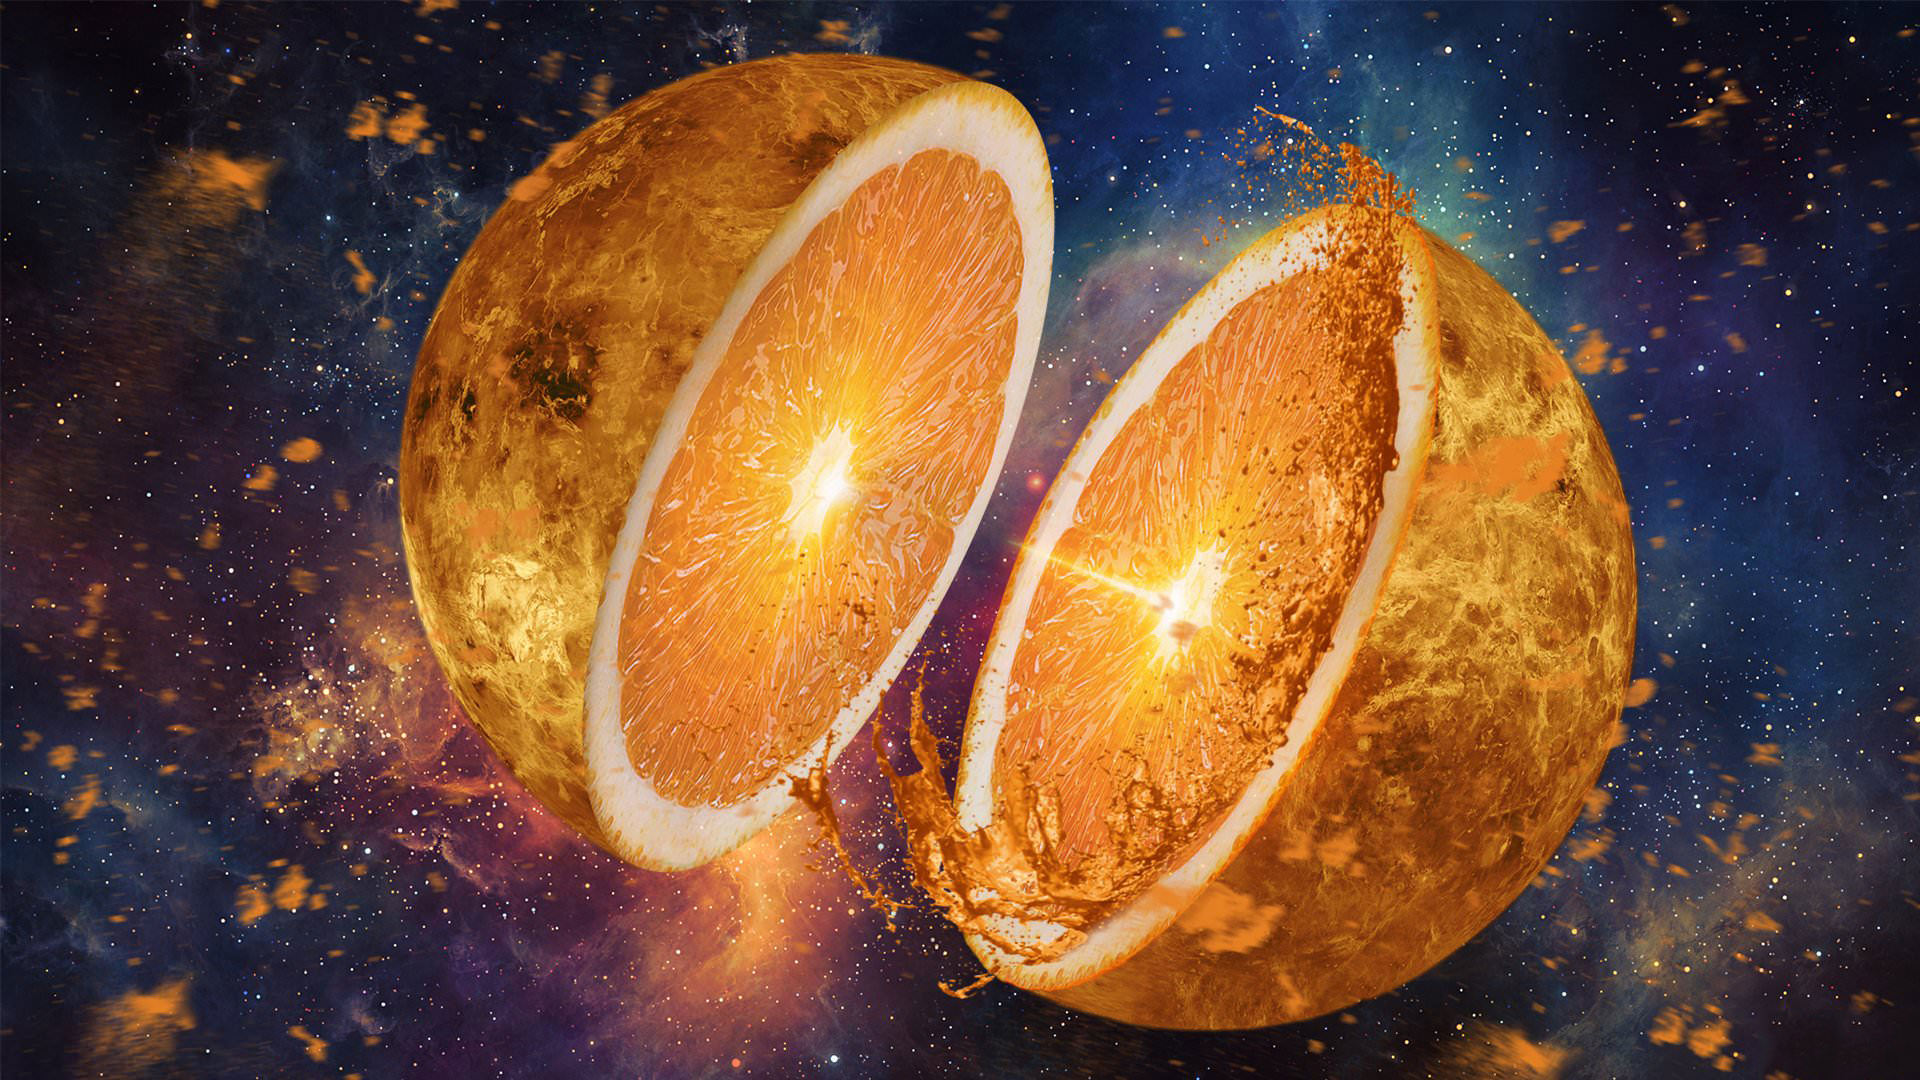 General 1920x1080 space orange (fruit) fruit